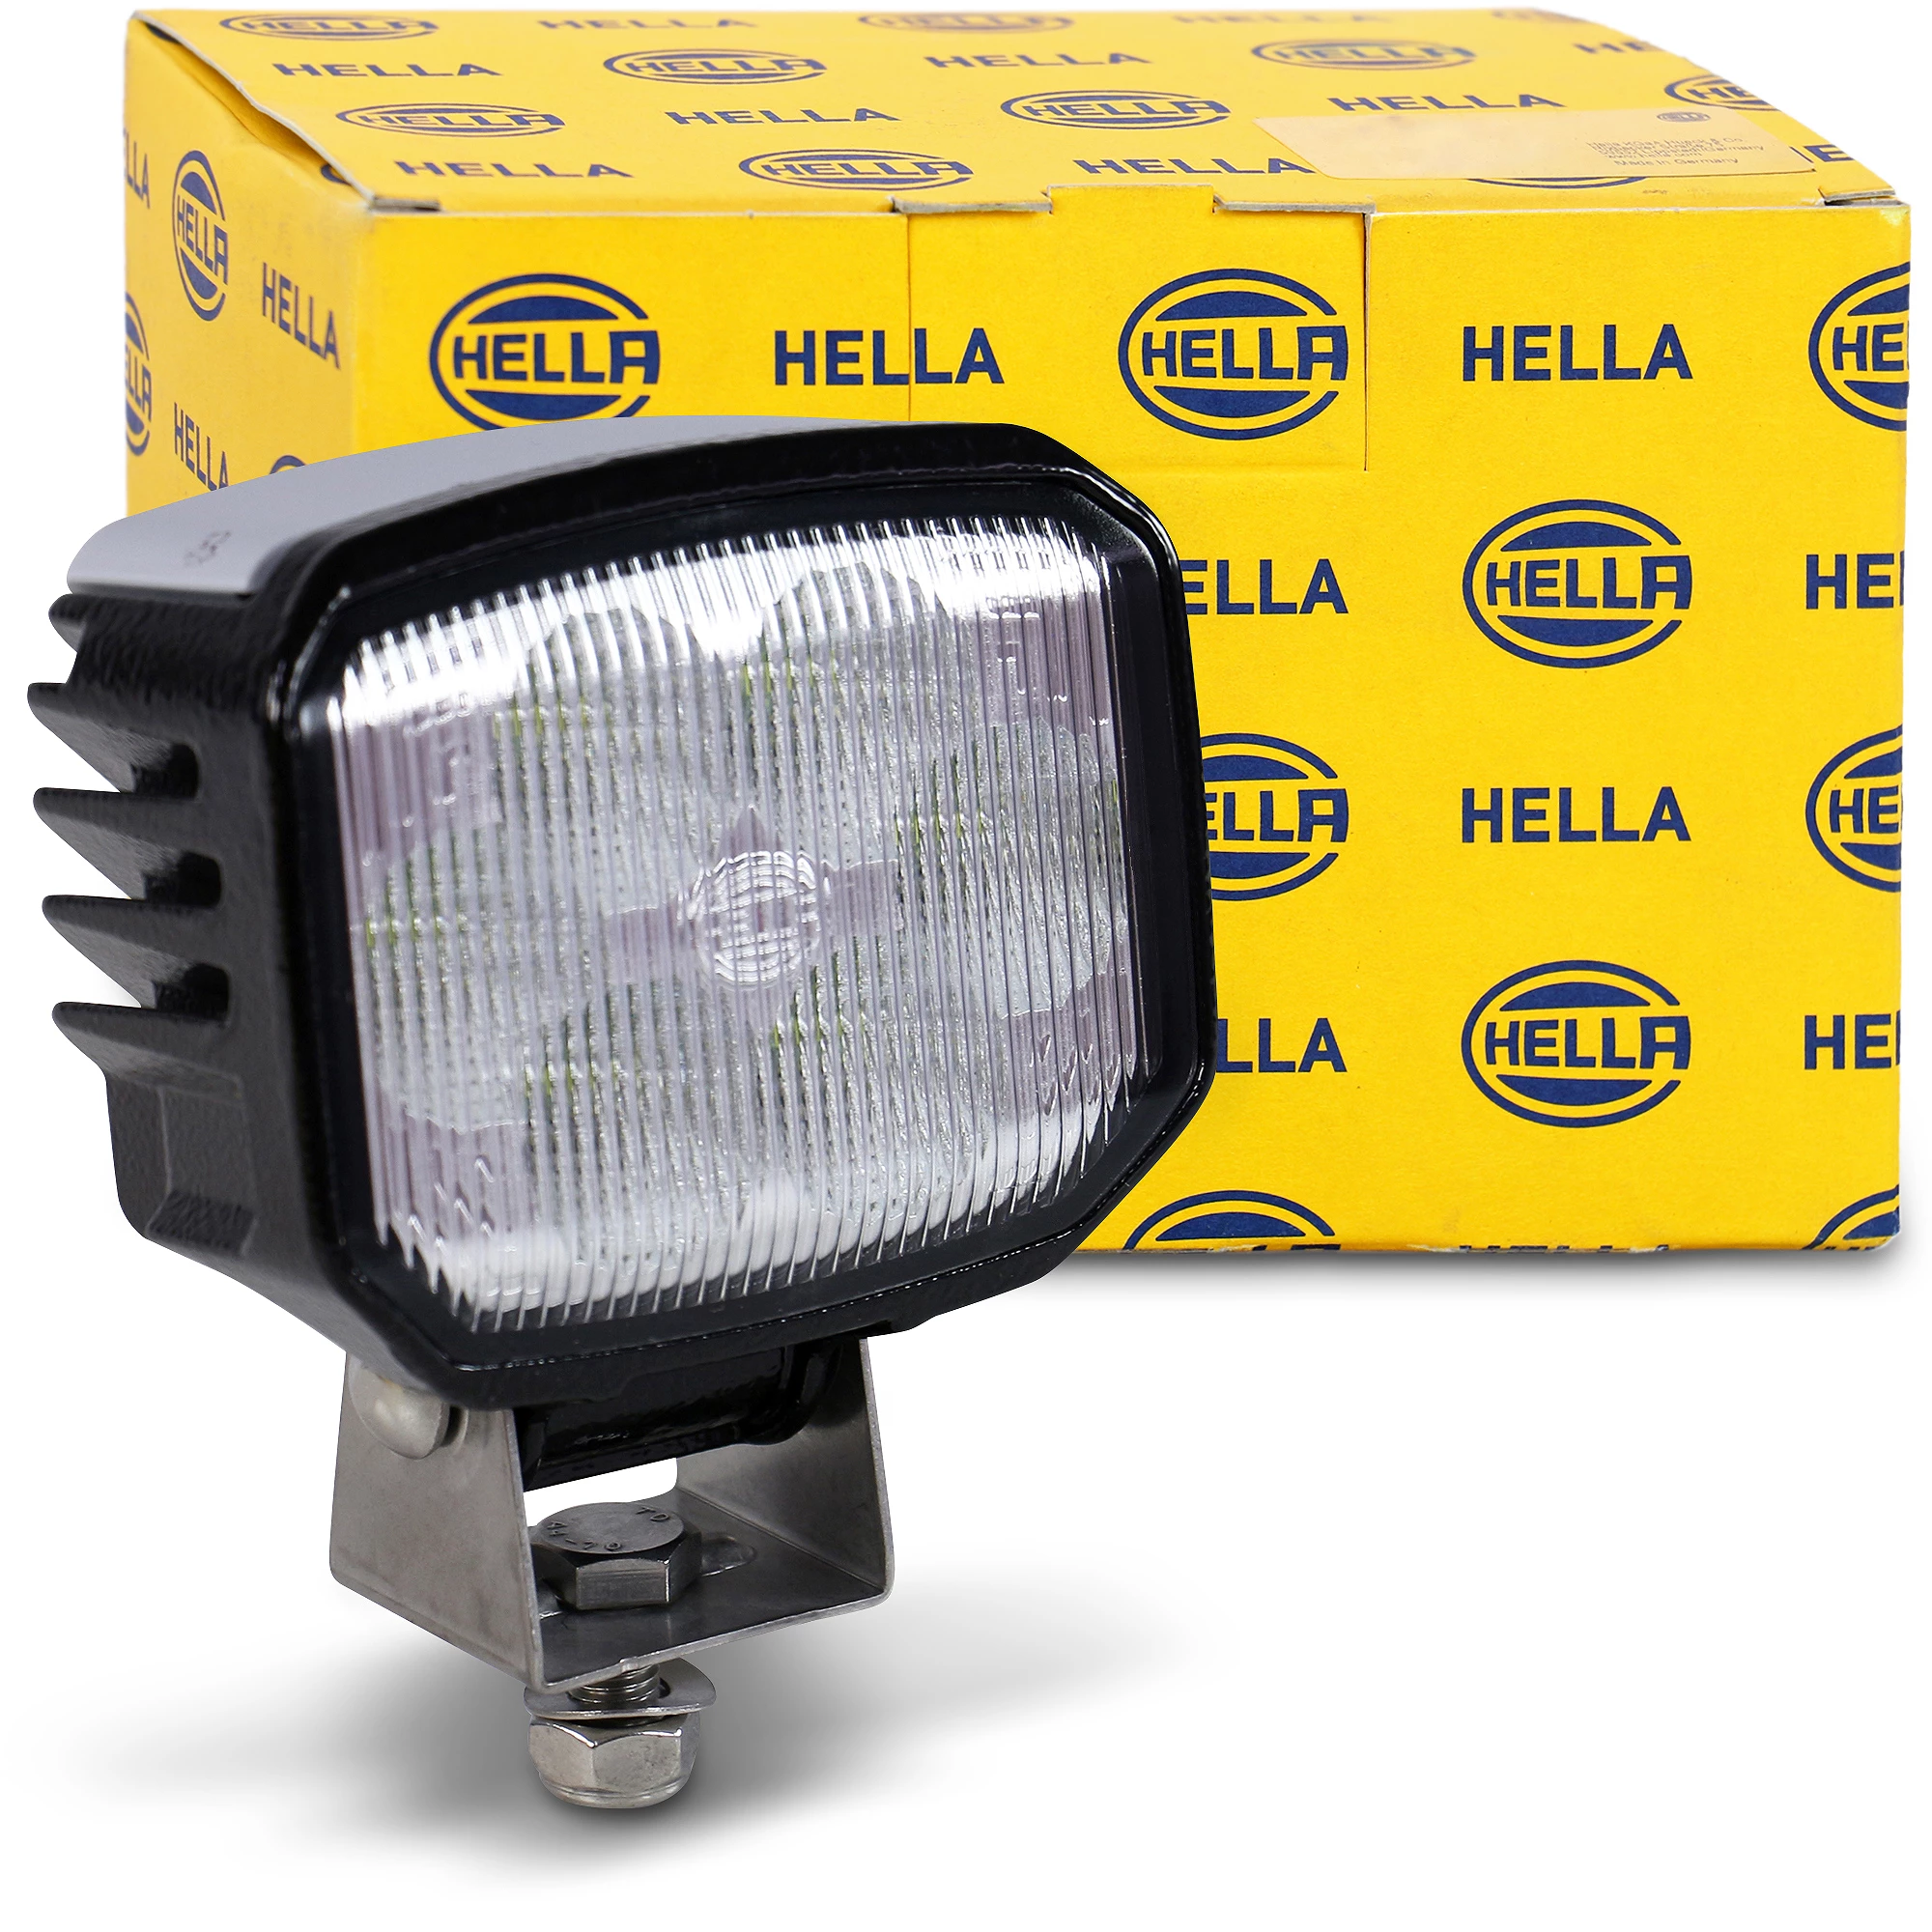 HELLA LED-Arbeitsscheinwerfer - Power Beam 1500 - 24/12V 1GA996288